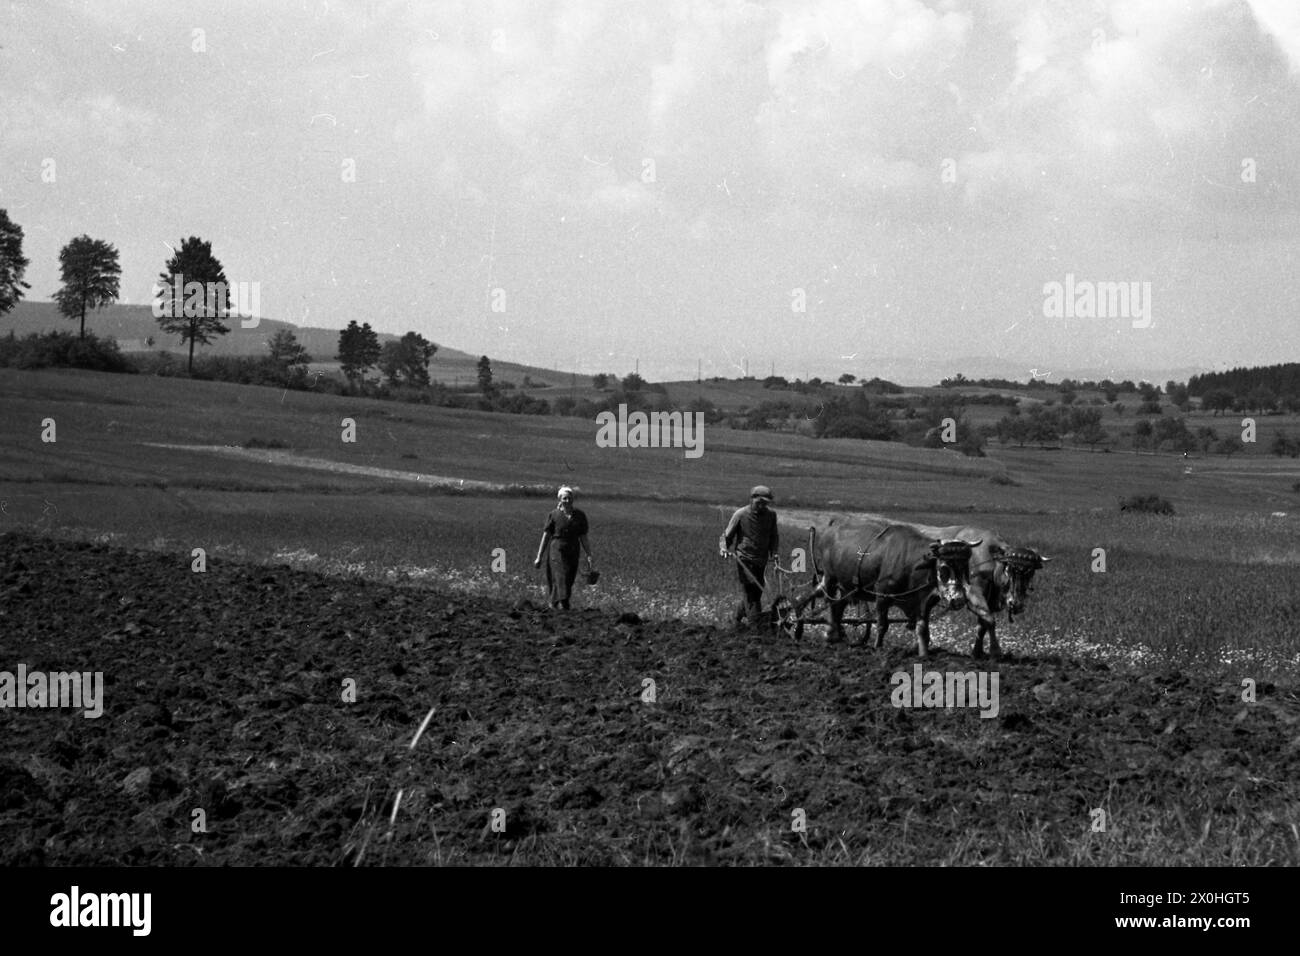 Les agriculteurs charrue les champs avec une équipe d'oxen. [traduction automatique] Banque D'Images